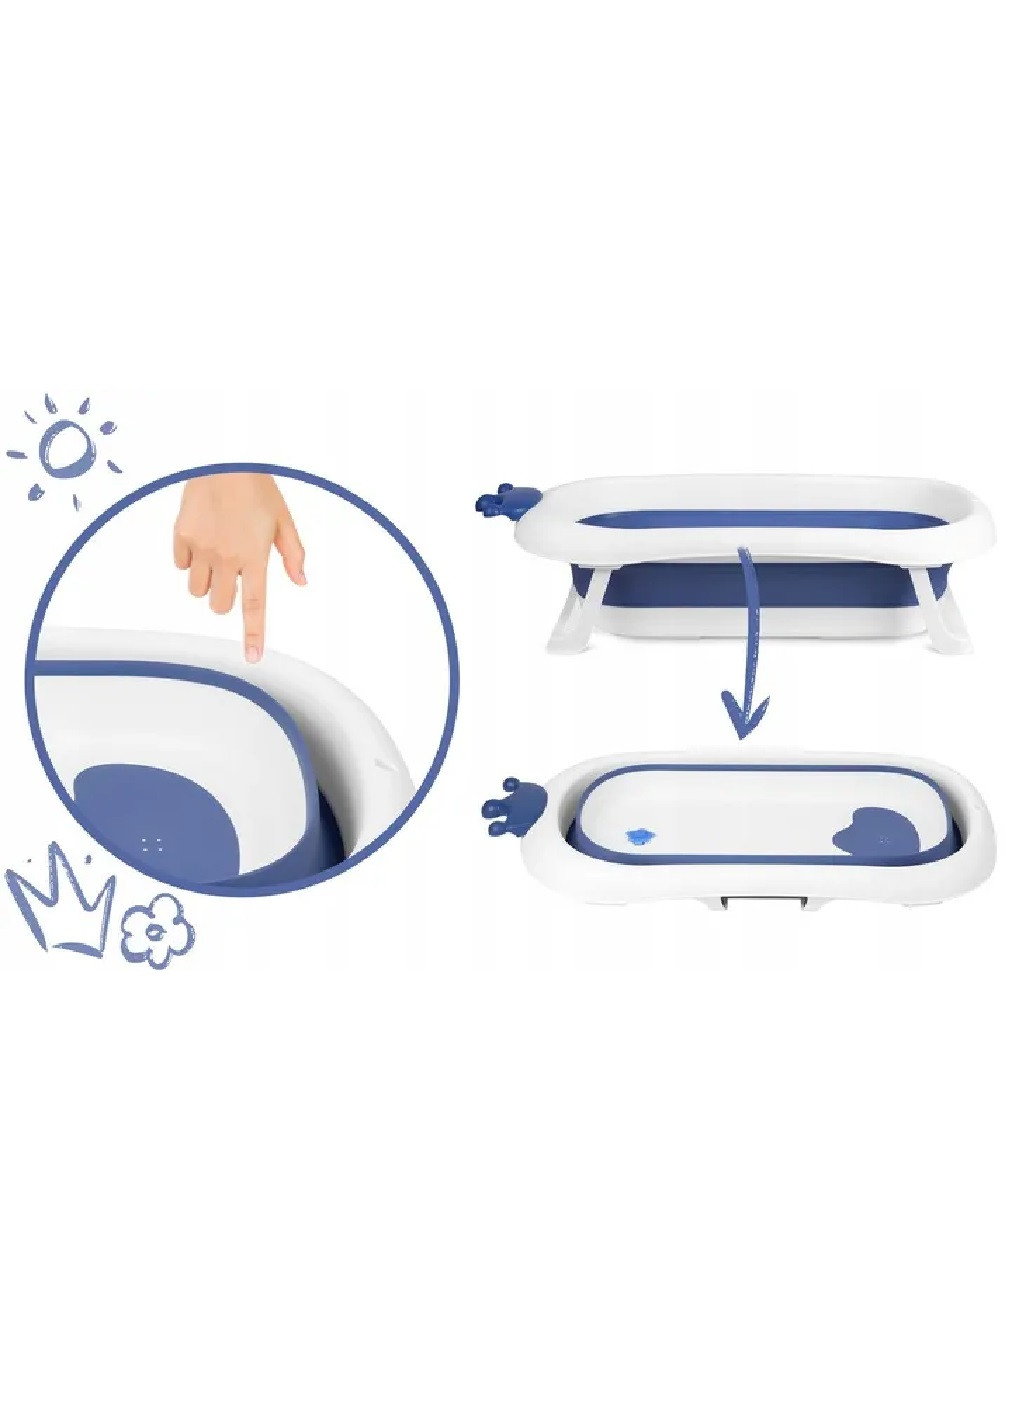 Складная компактная портативная переносная ванночка с подушкой нескользящей отделкой для детей малышей (475151-Prob) Бело-синяя Unbranded (262452218)